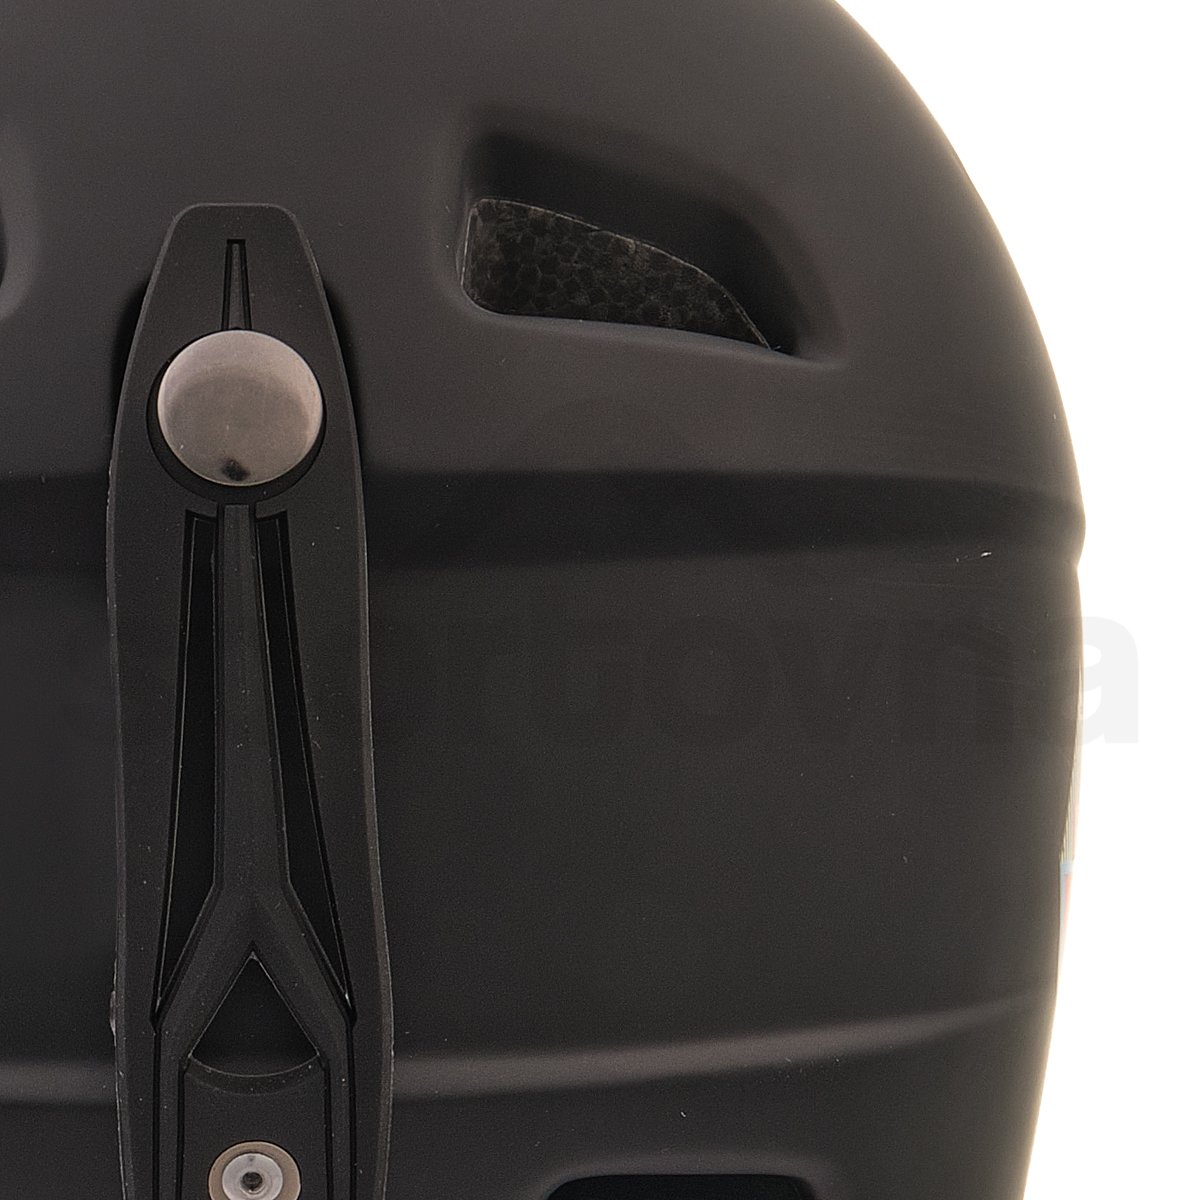 Lyžařská helma McKinley Ski Pulse Revo Visier Jr - černá